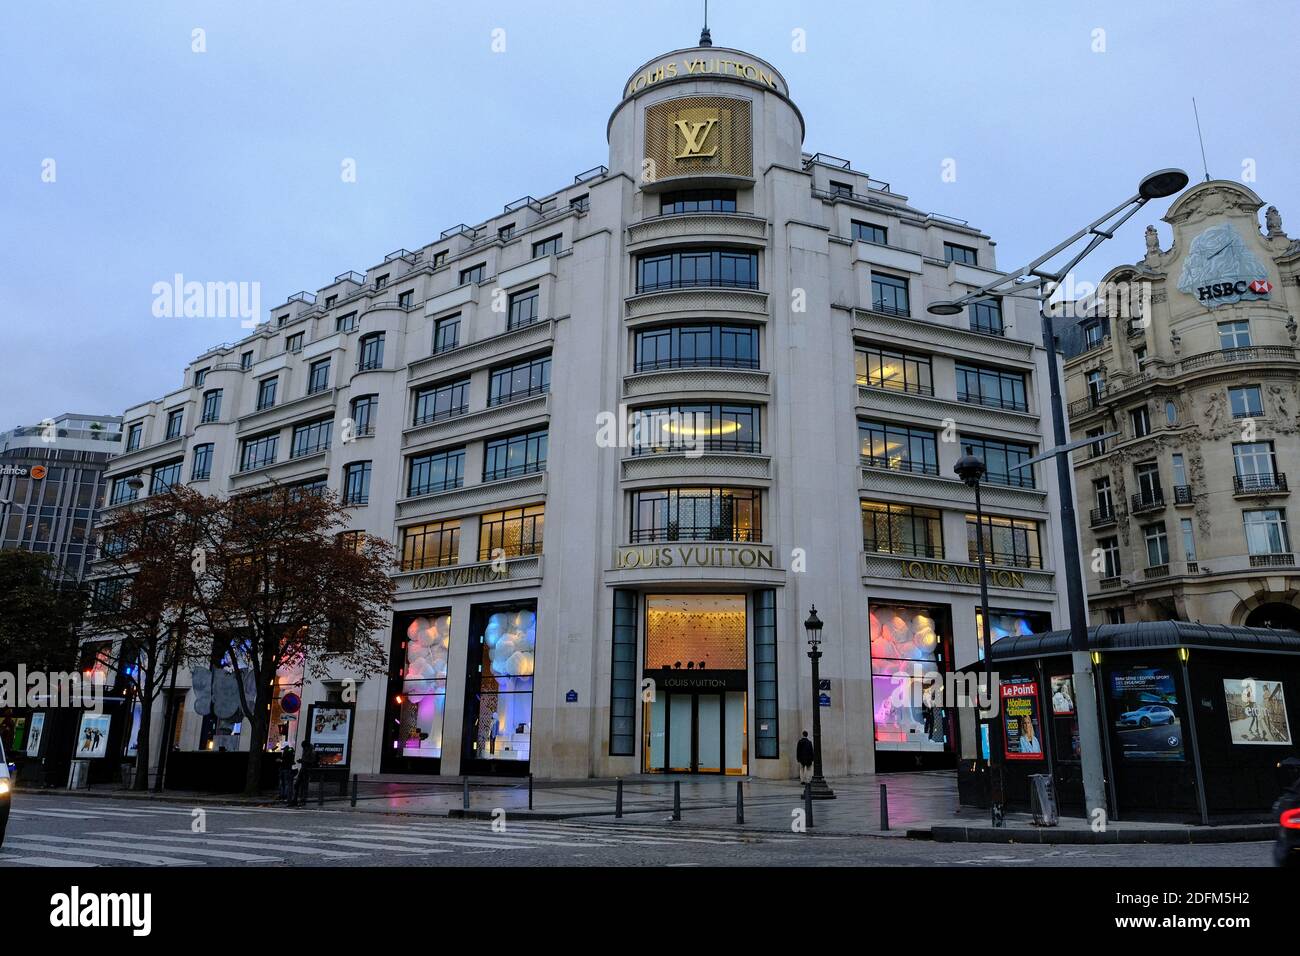 The entrance of Louis Vuitton Paris Store on Boulevard Champs-Elysees,Paris  France Stock Photo - Alamy